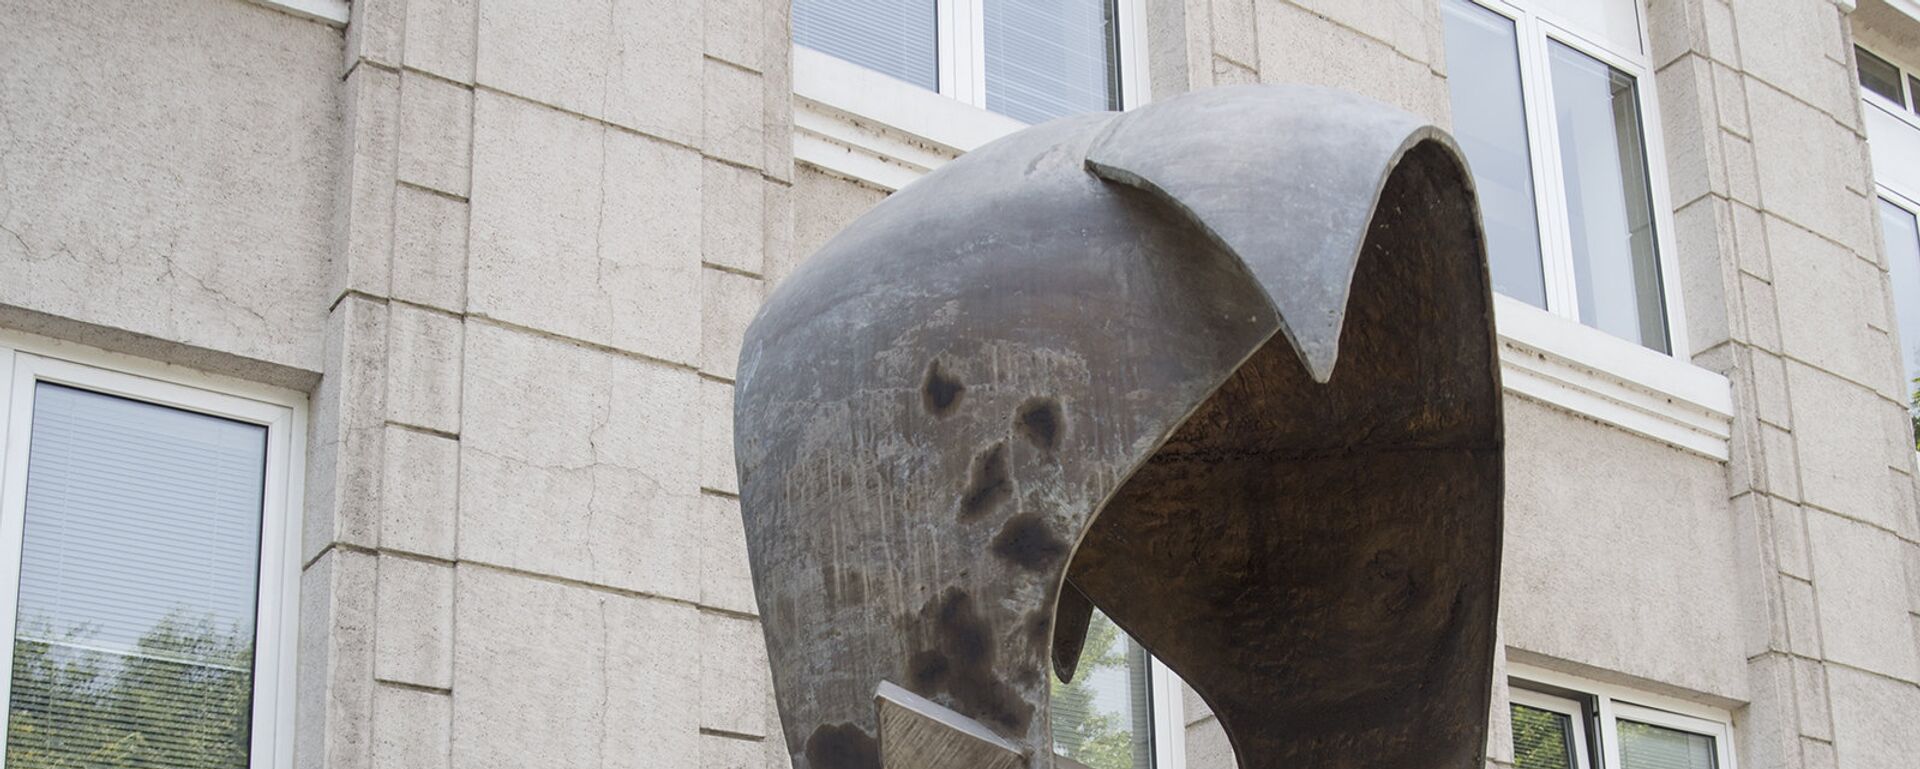 Памятник армянскому драму напротив здания Центробанка - Sputnik Արմենիա, 1920, 04.05.2021